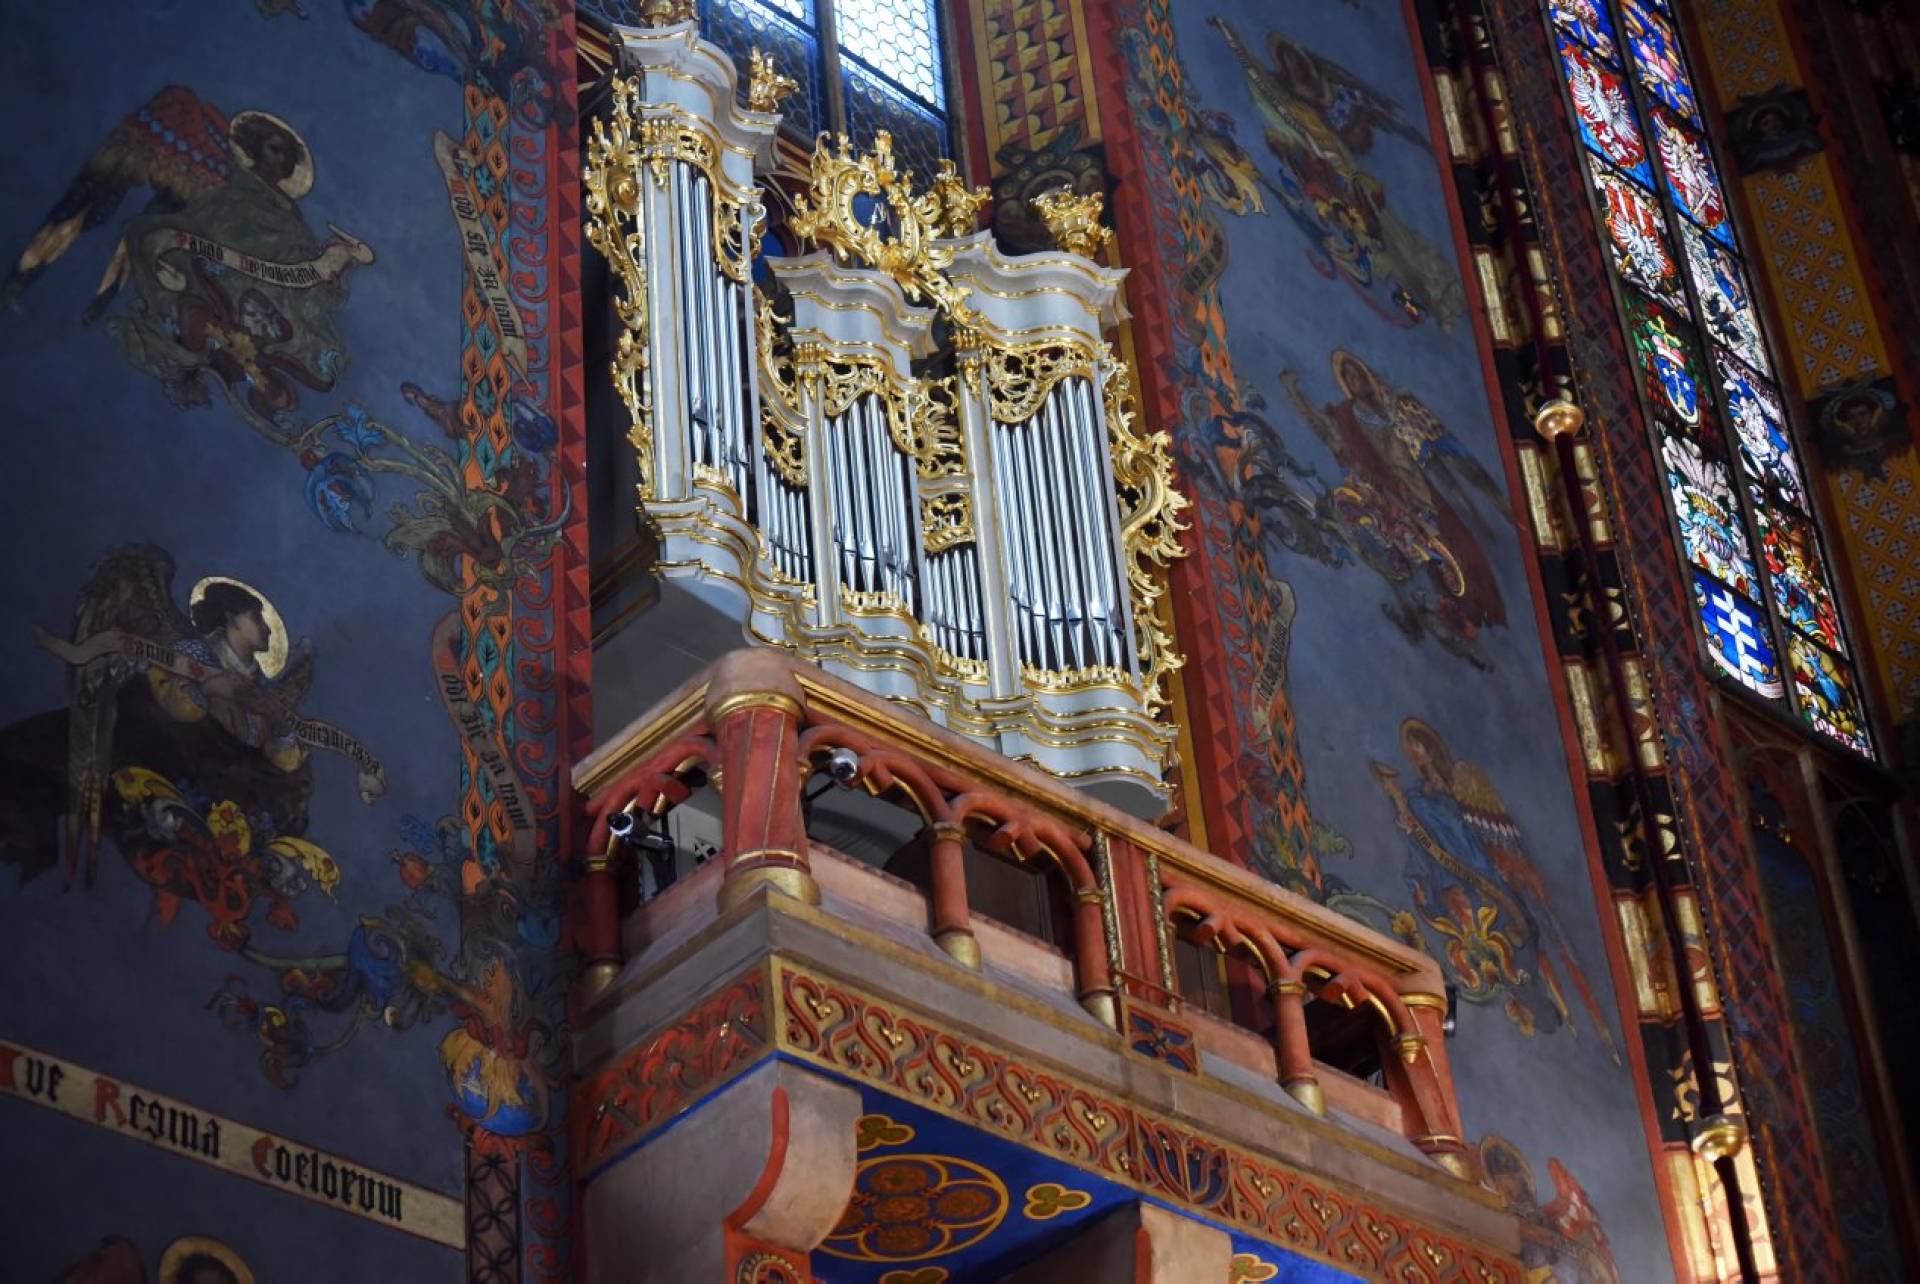 Zbudowano te organy w romantycznym stylu. Teraz odnowione